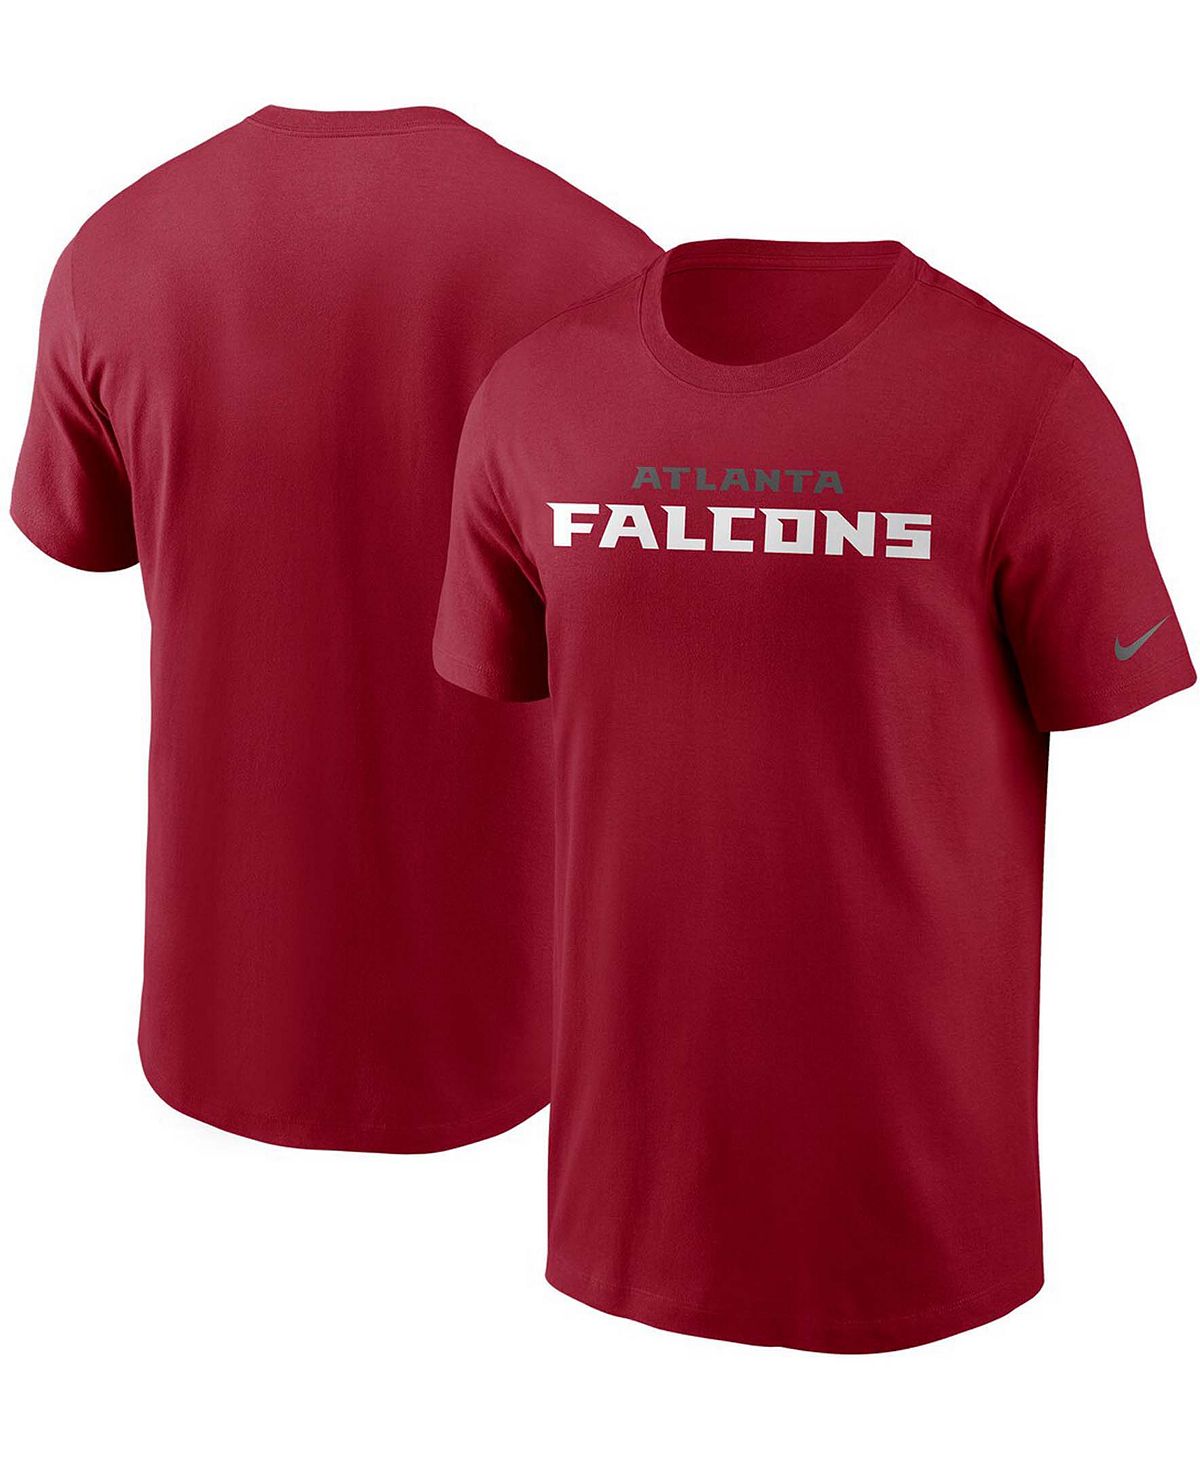 Мужская красная футболка atlanta falcons team с надписью Nike, красный